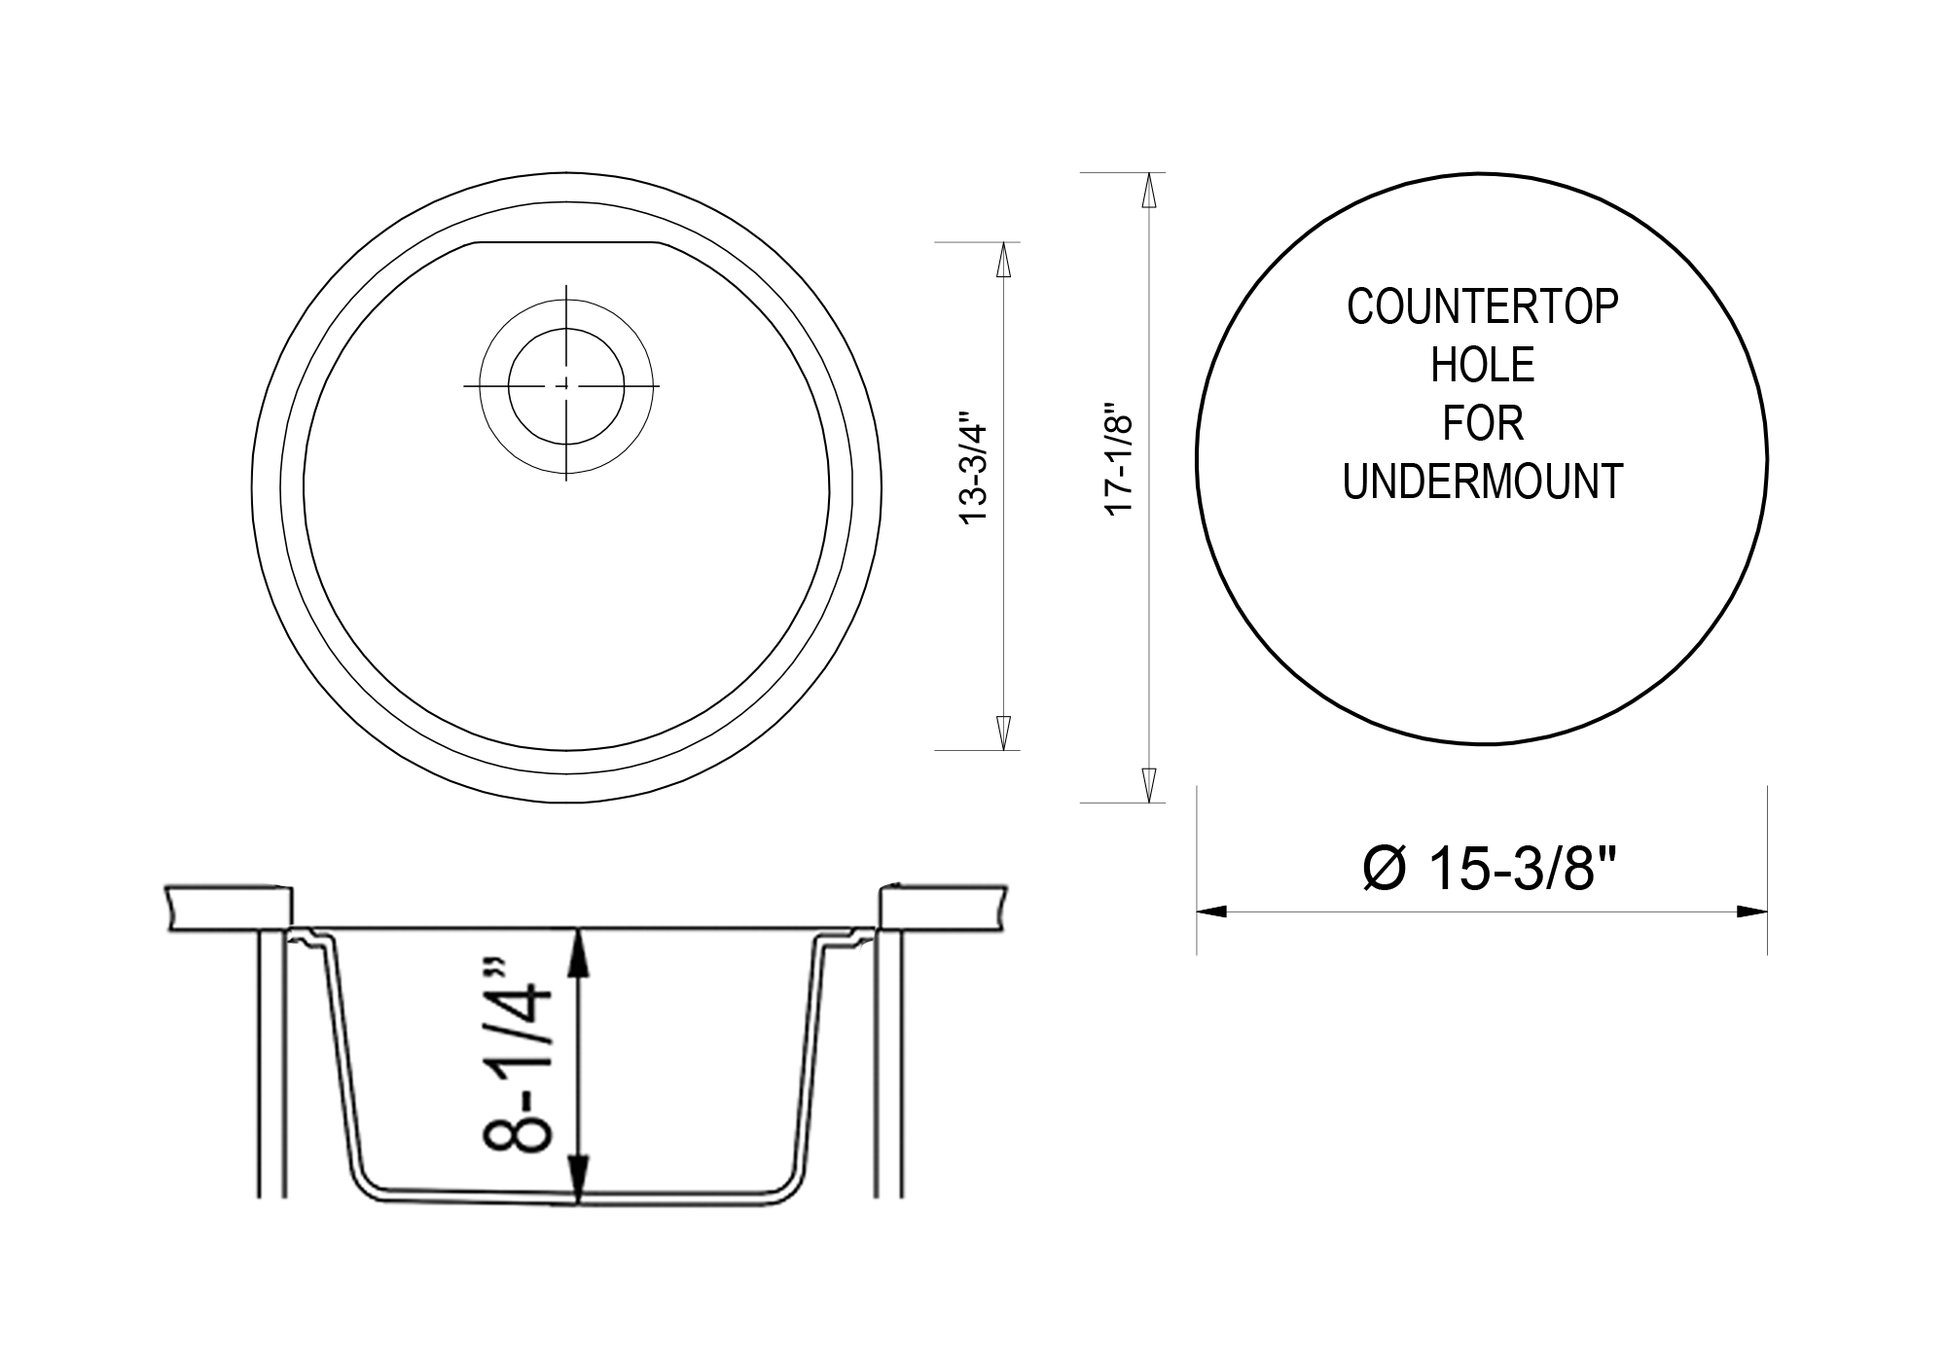 Alfi brand AB1717UM 17" Undermount Round Granite Composite Kitchen Prep Sink